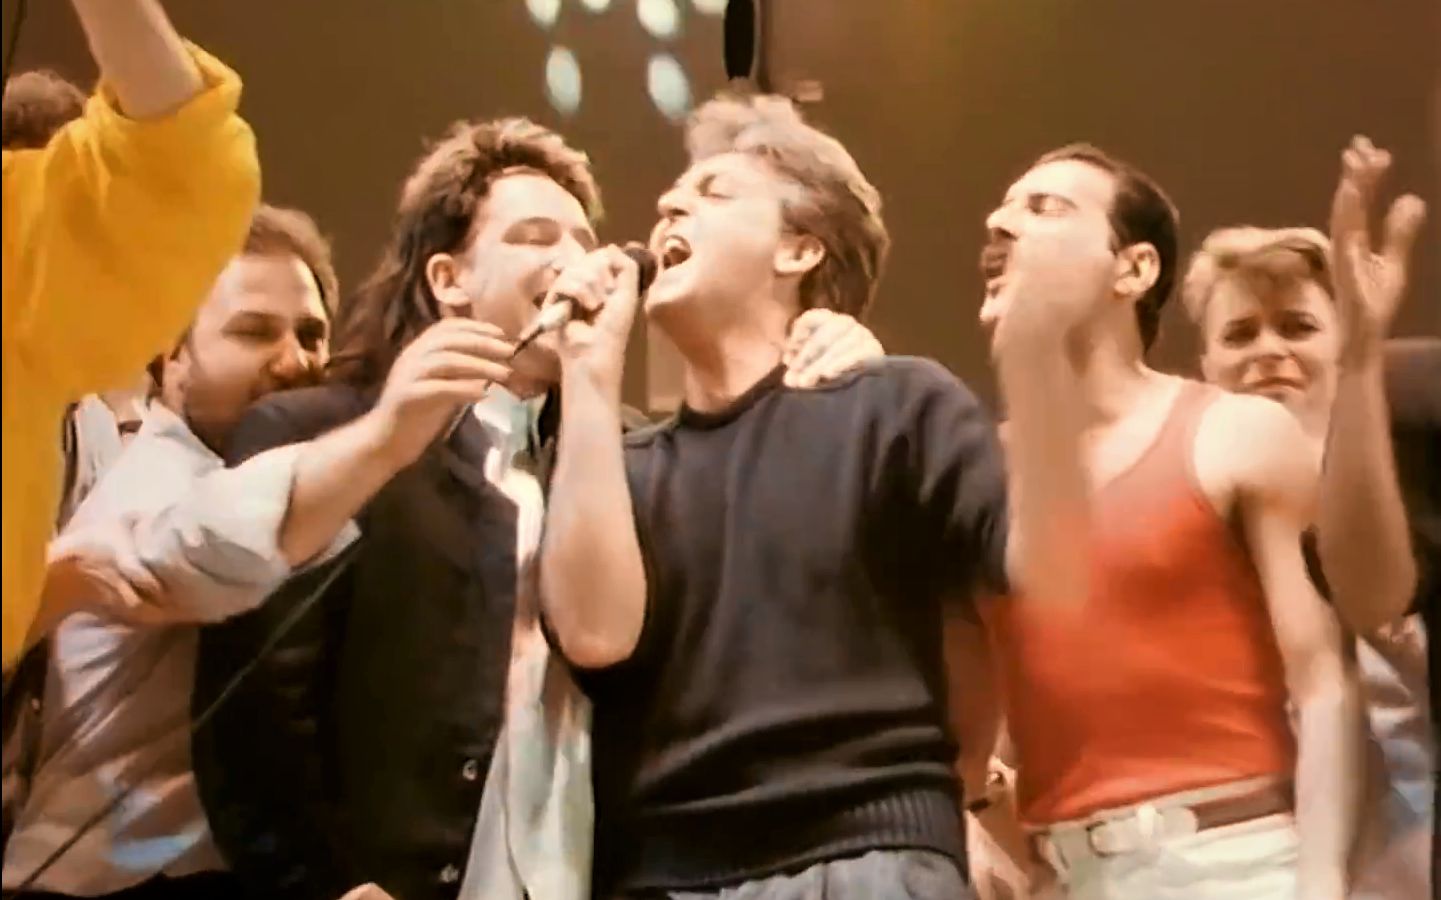 可能是摇滚史上最伟大的一帧画面，Live Aid 终场曲唯一蓝光素材：牙叔、泡儿、鲍伊、乔治迈克尔、鲍勃格尔多夫、Bono同框（1080p）